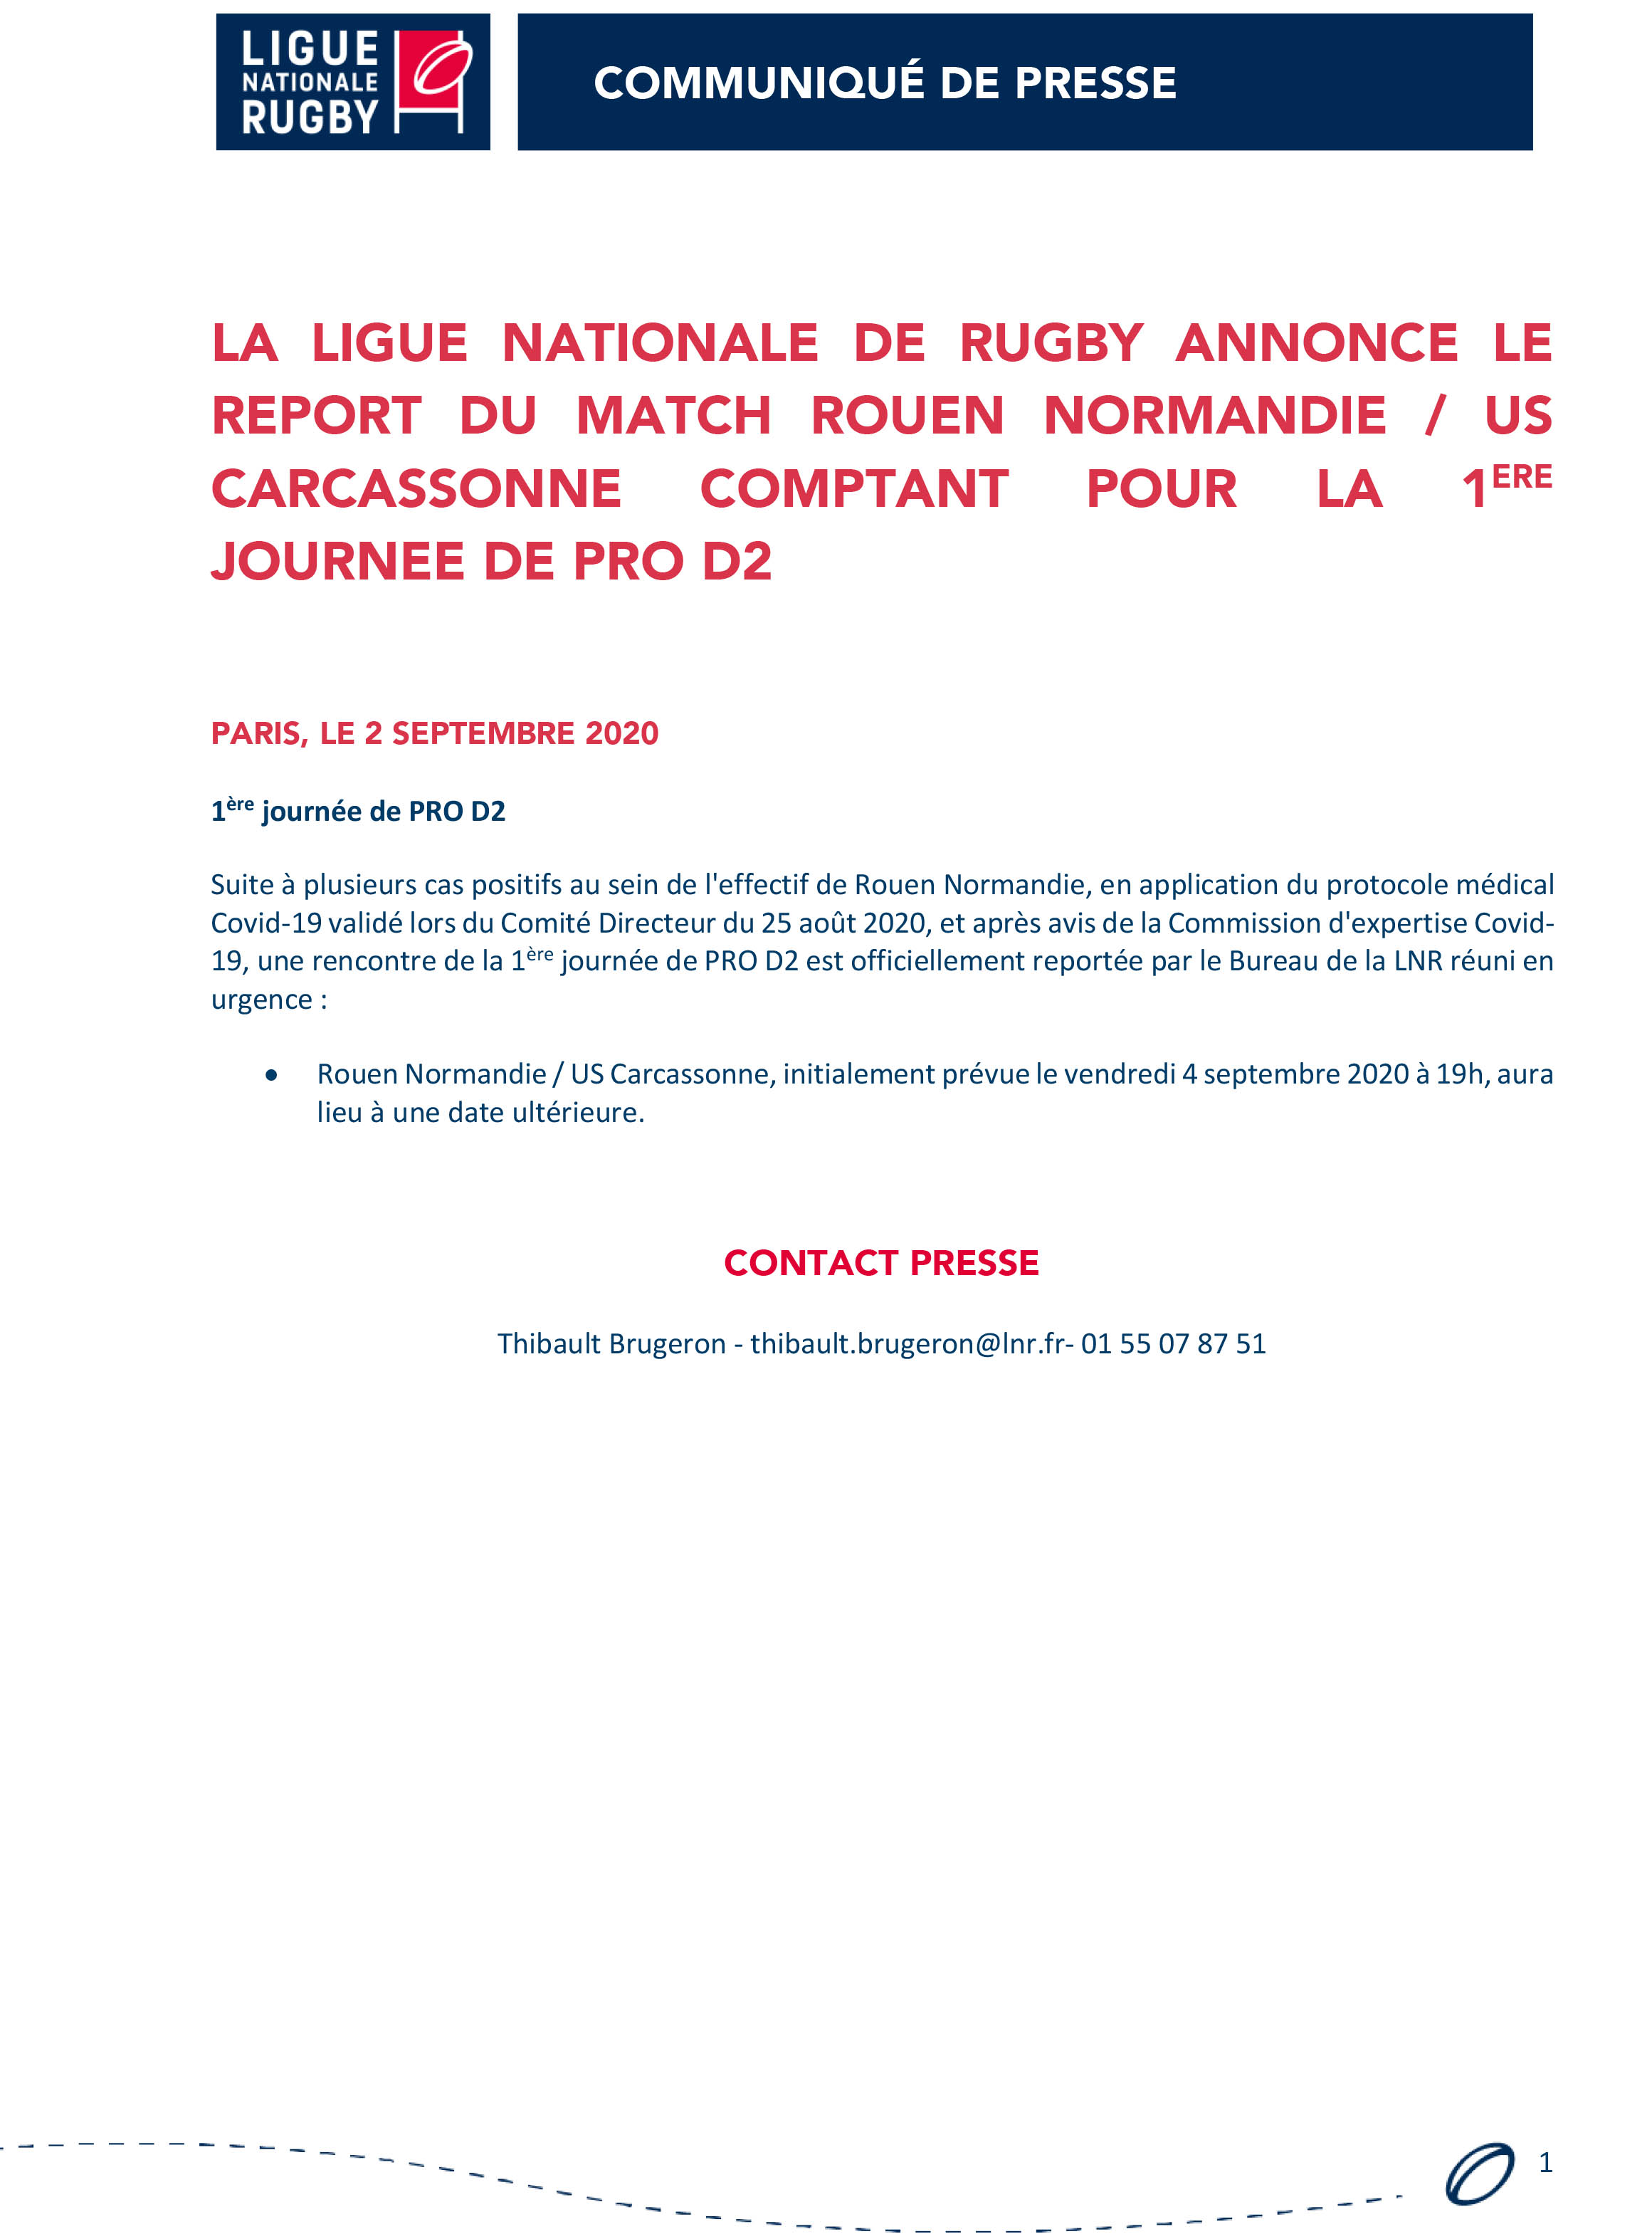 La Ligue Nationale de Rugby annonce le report du match Rouen Normandie US Carcassonne comptant pour la 1ère journée de PRO D2